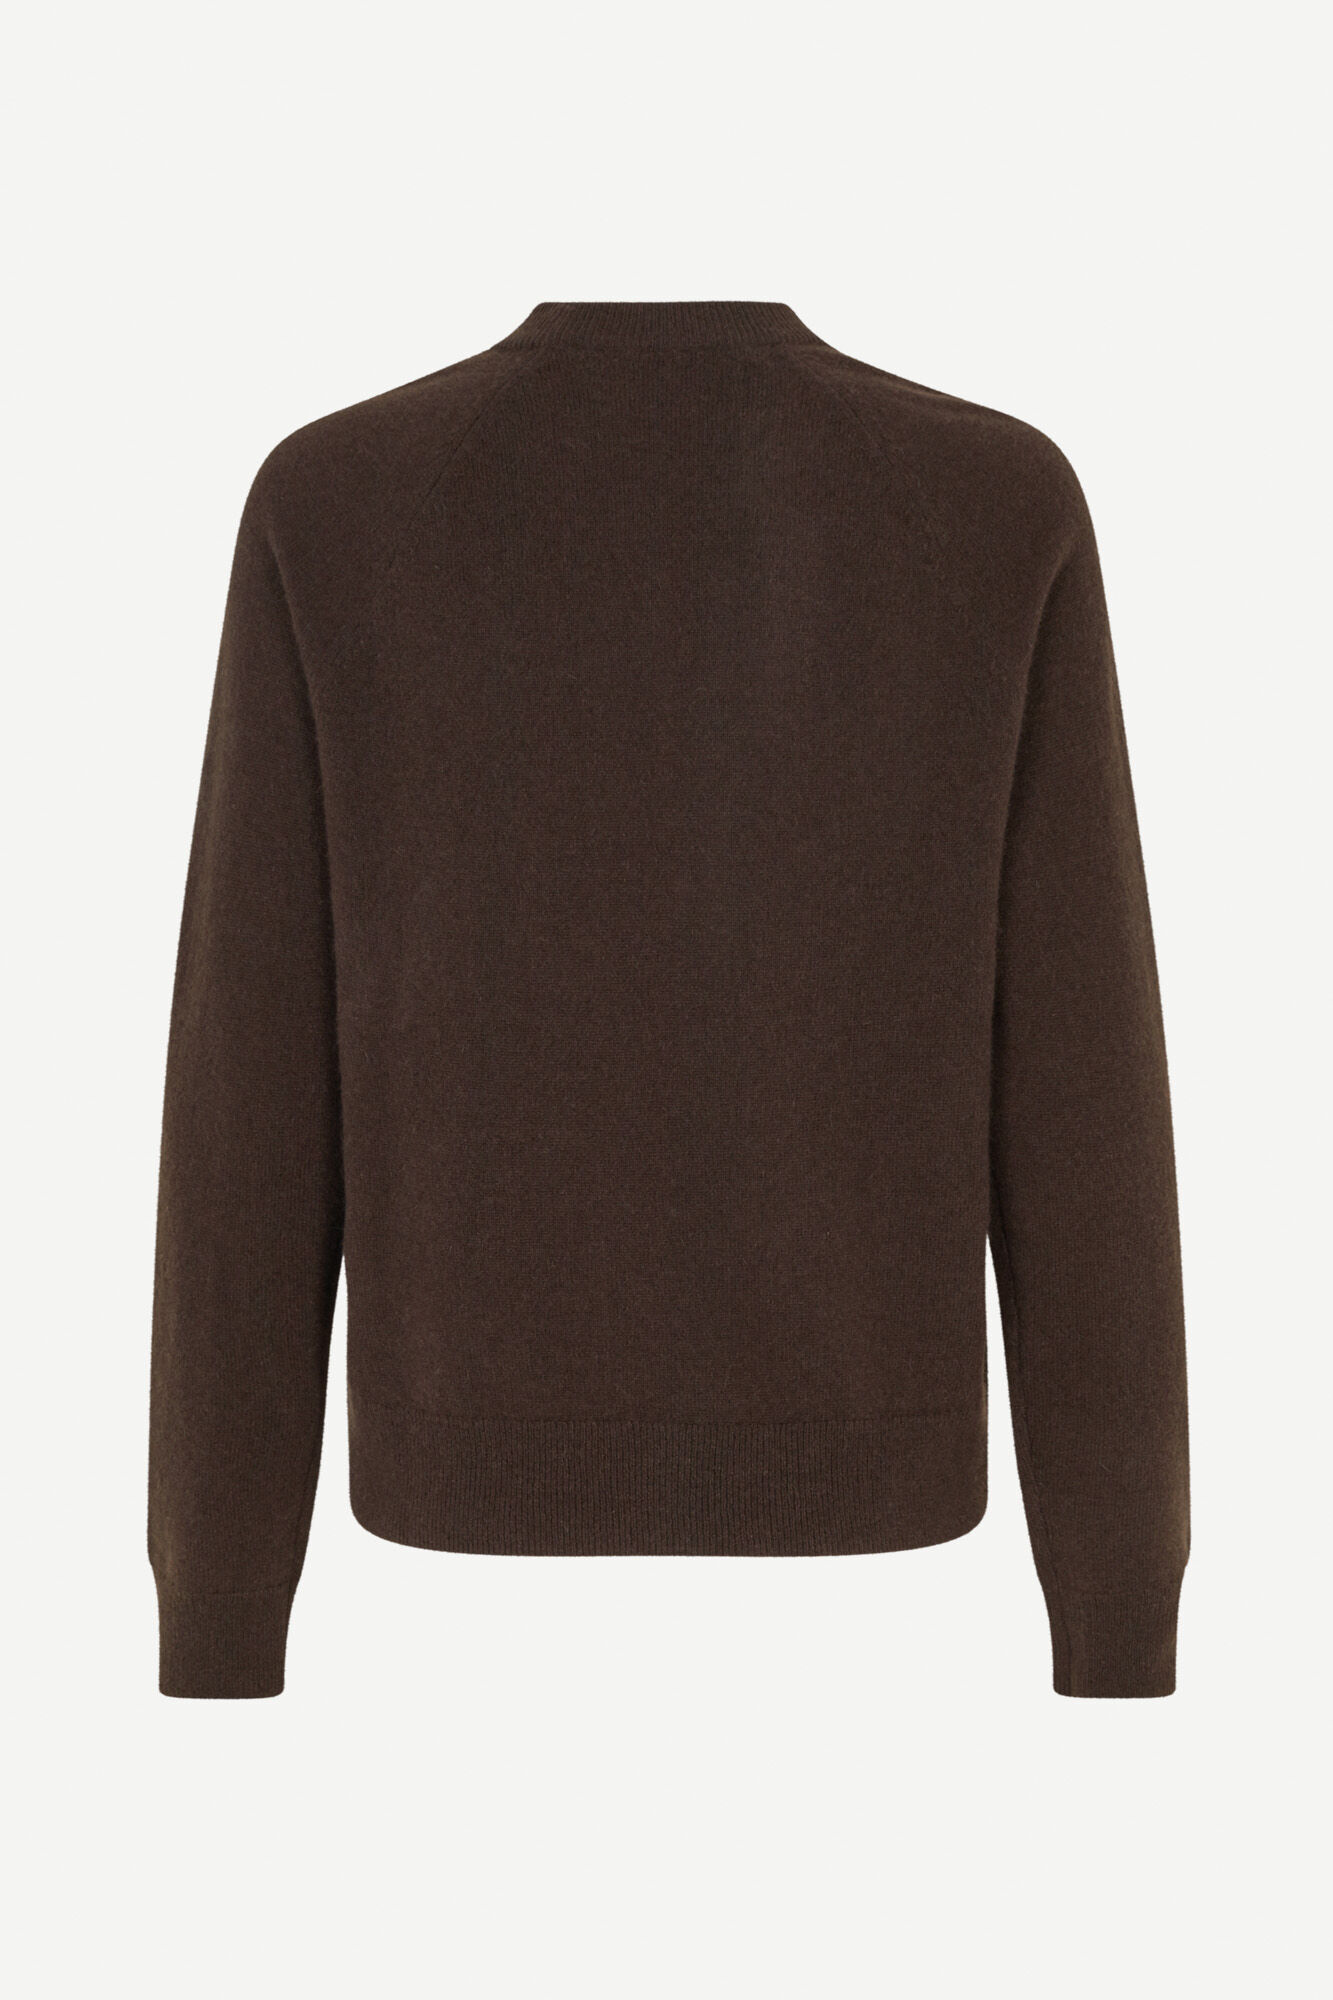 Risskio Wool Sweater grey brown Fashion Sweaters Wool Sweaters 